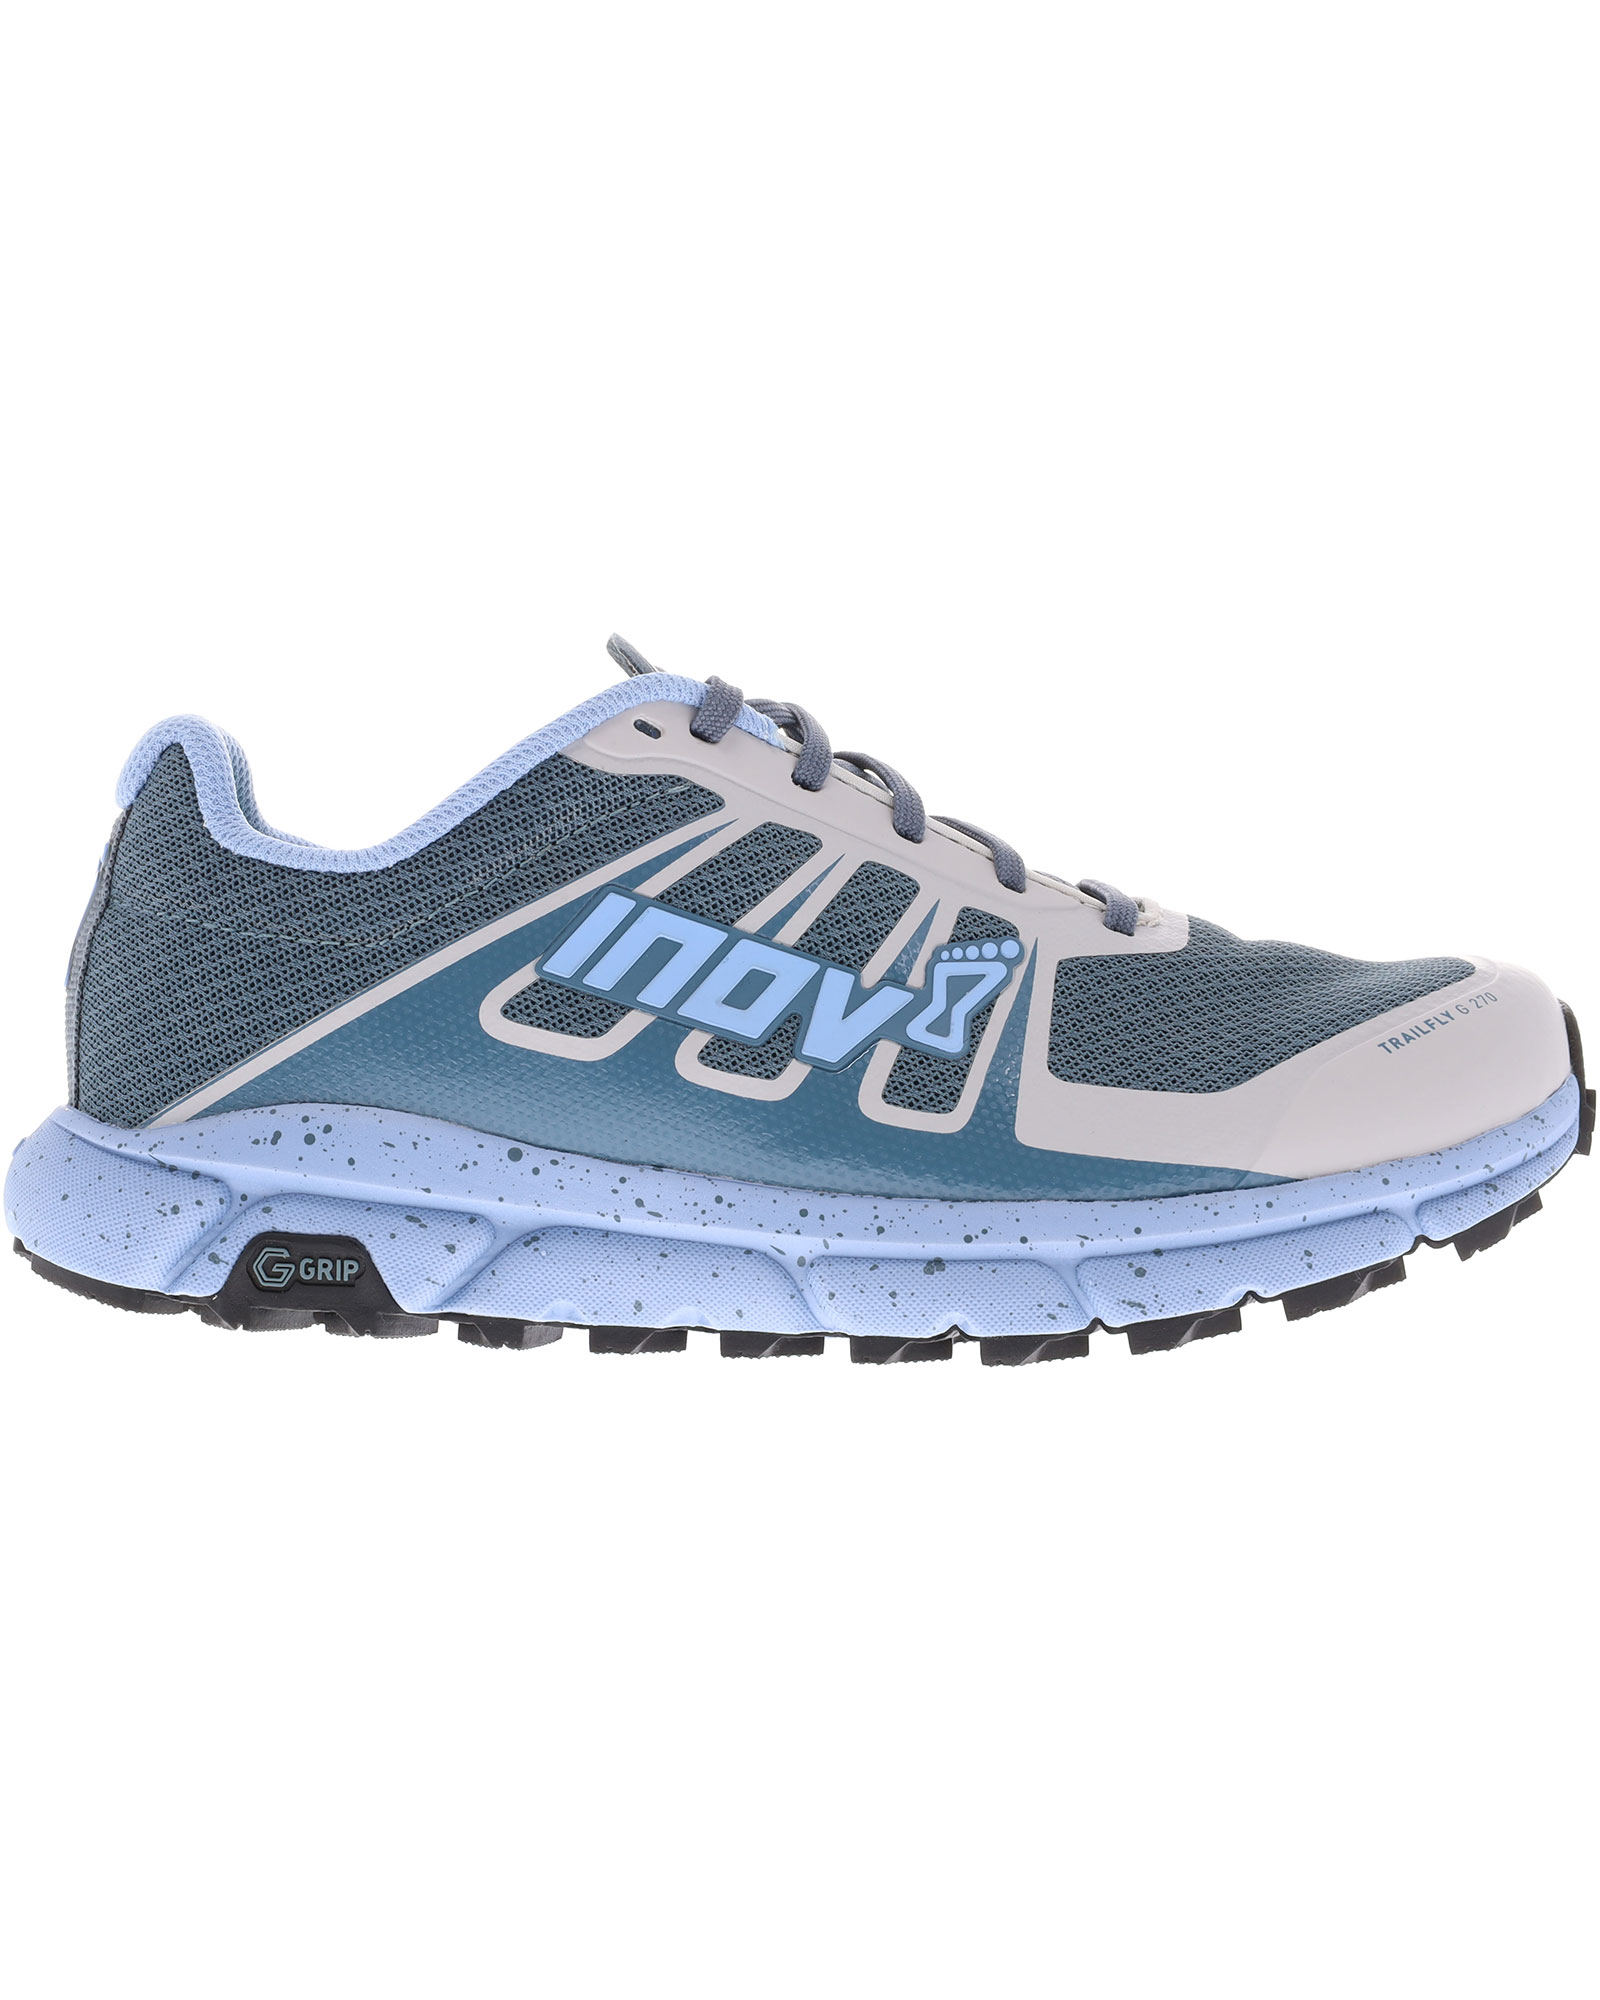 Inov 8 TrailFly G 270 V2 Women’s Trail Shoes - Blue/Grey UK 4